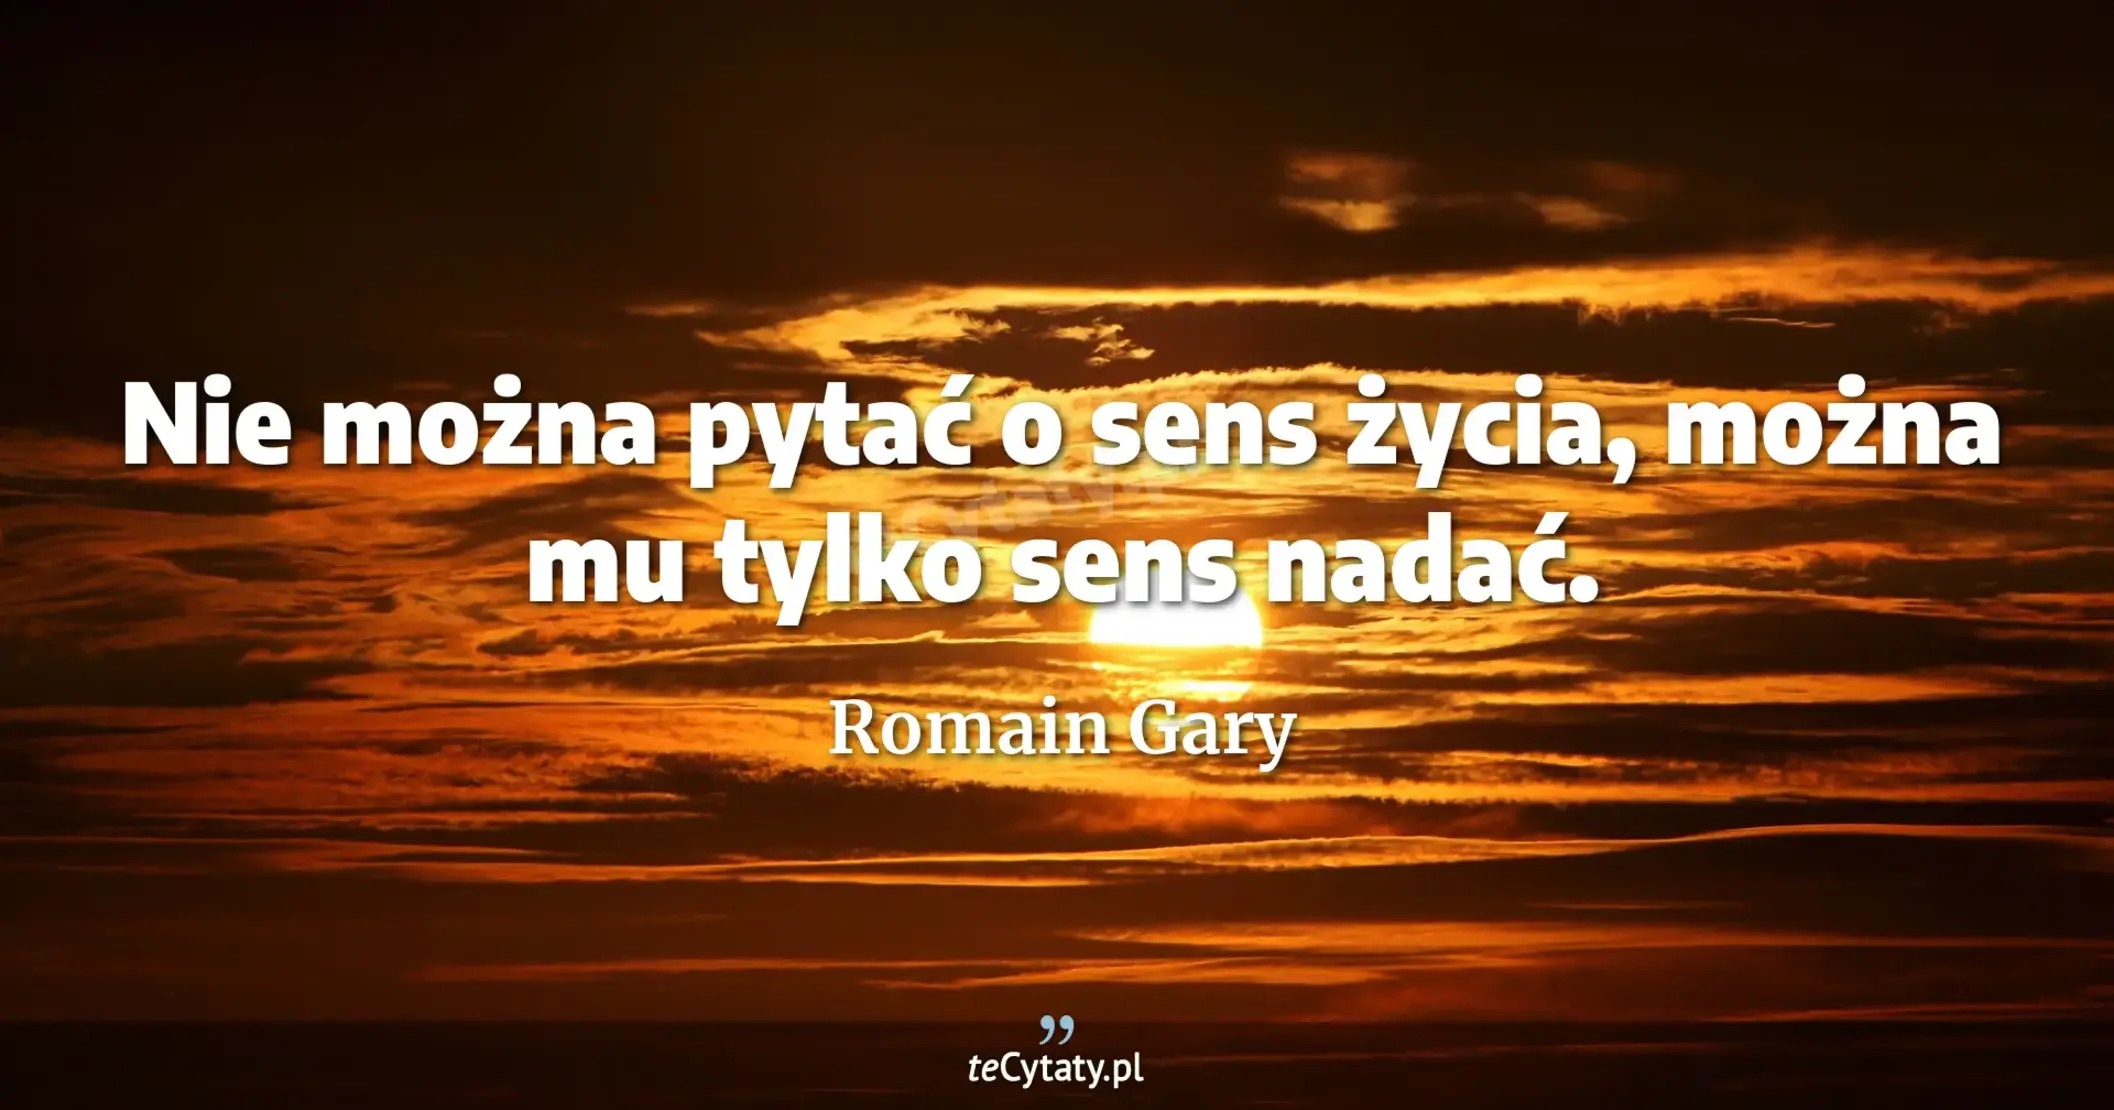 Nie można pytać o sens życia, można mu tylko sens nadać. - Romain Gary